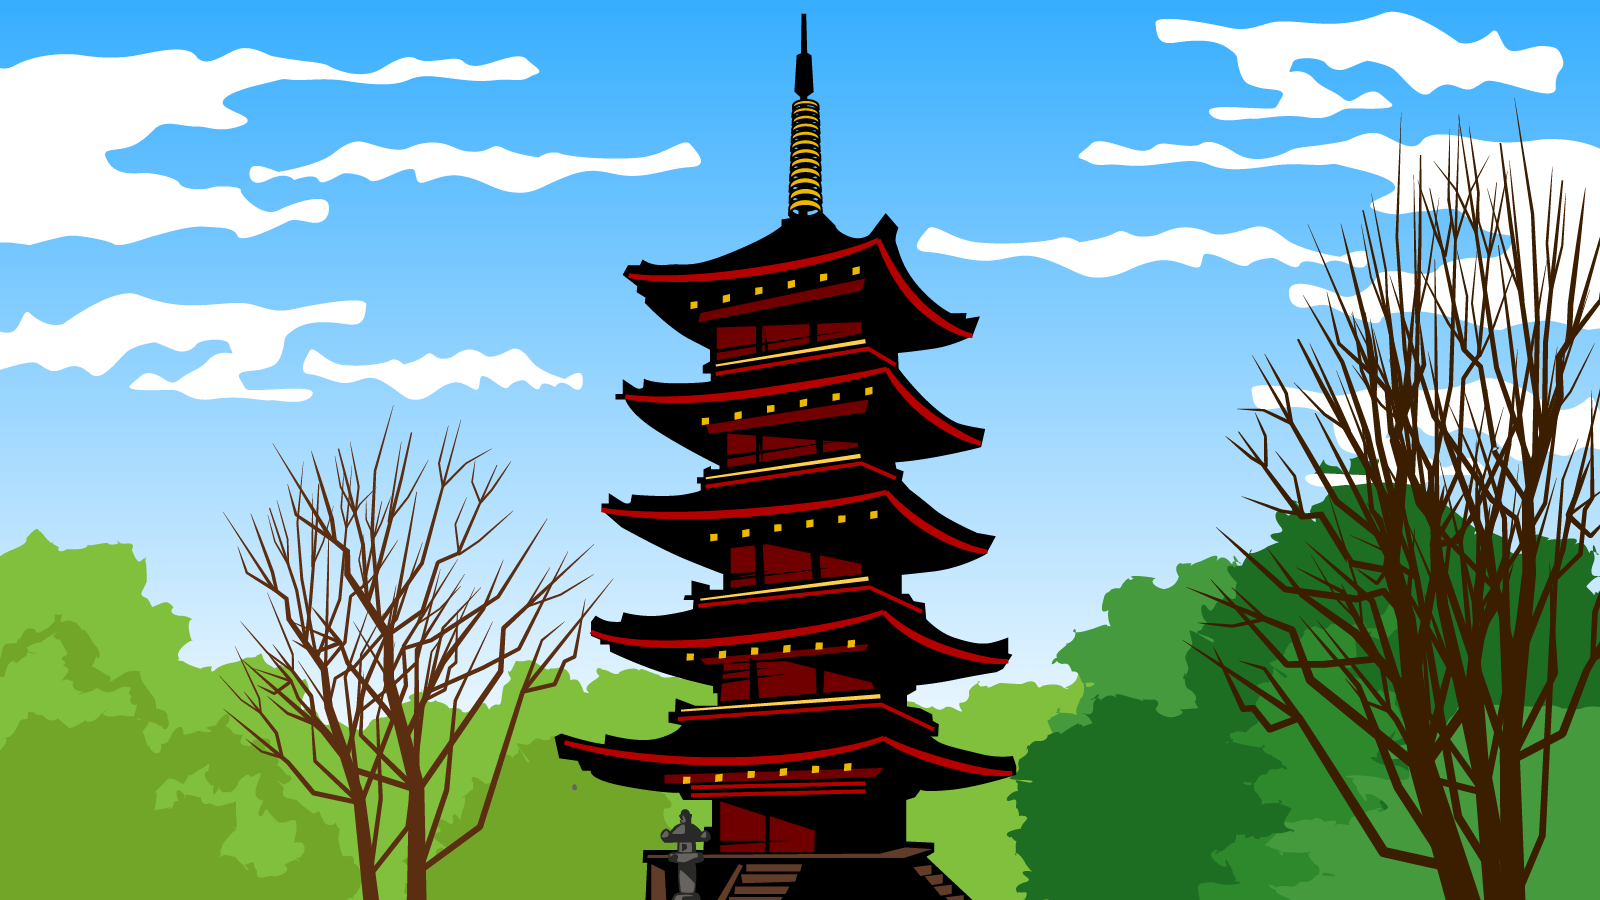 日本高层建筑的鼻祖 宽永寺五重塔